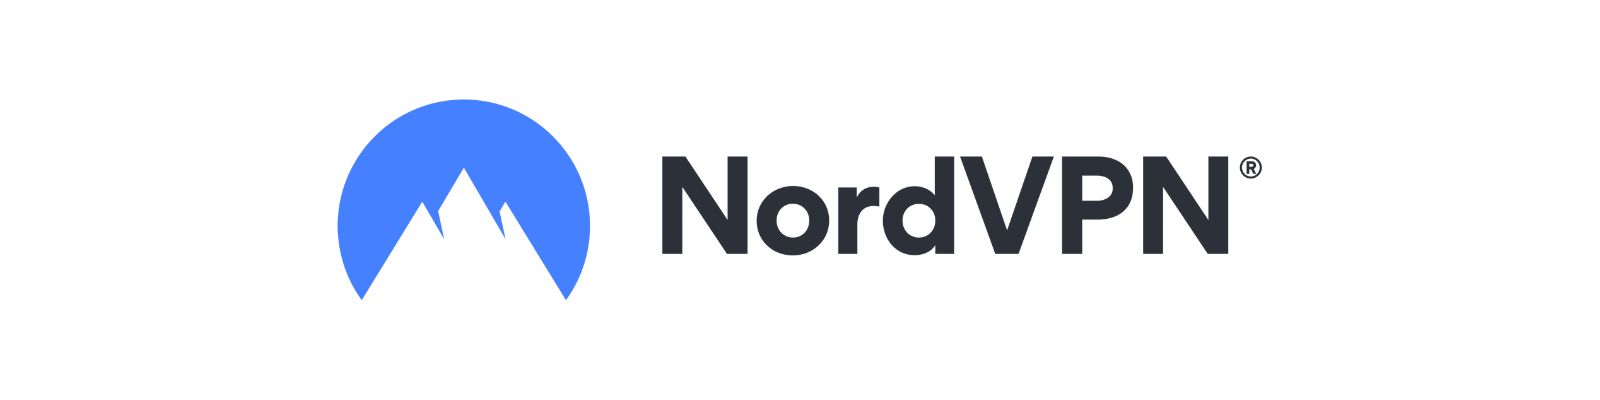 WhatsApp NordVPN: Telefones e Canais de atendimento!